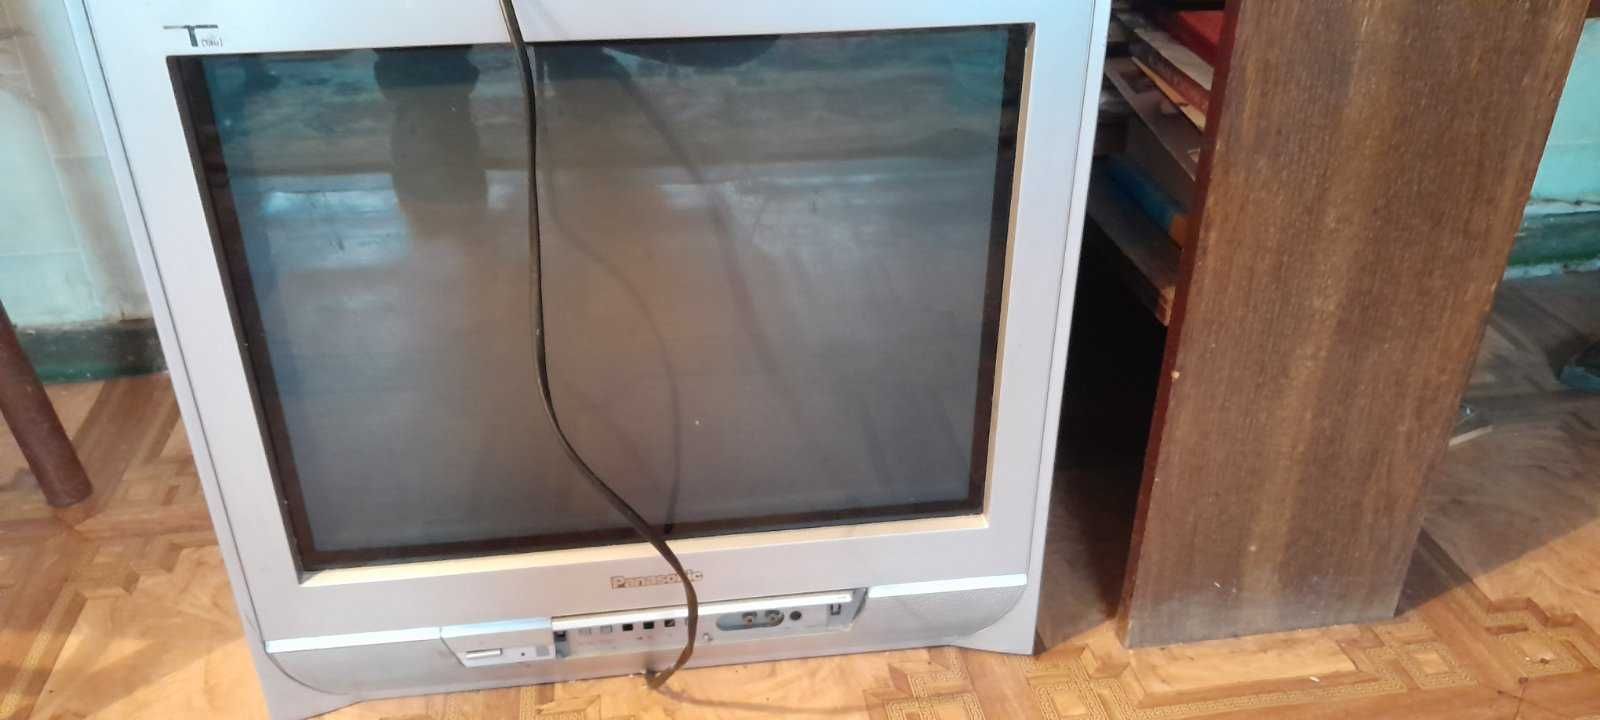 Продам два телевизора По 300 грн  за один. Все в рабочем состоянии .